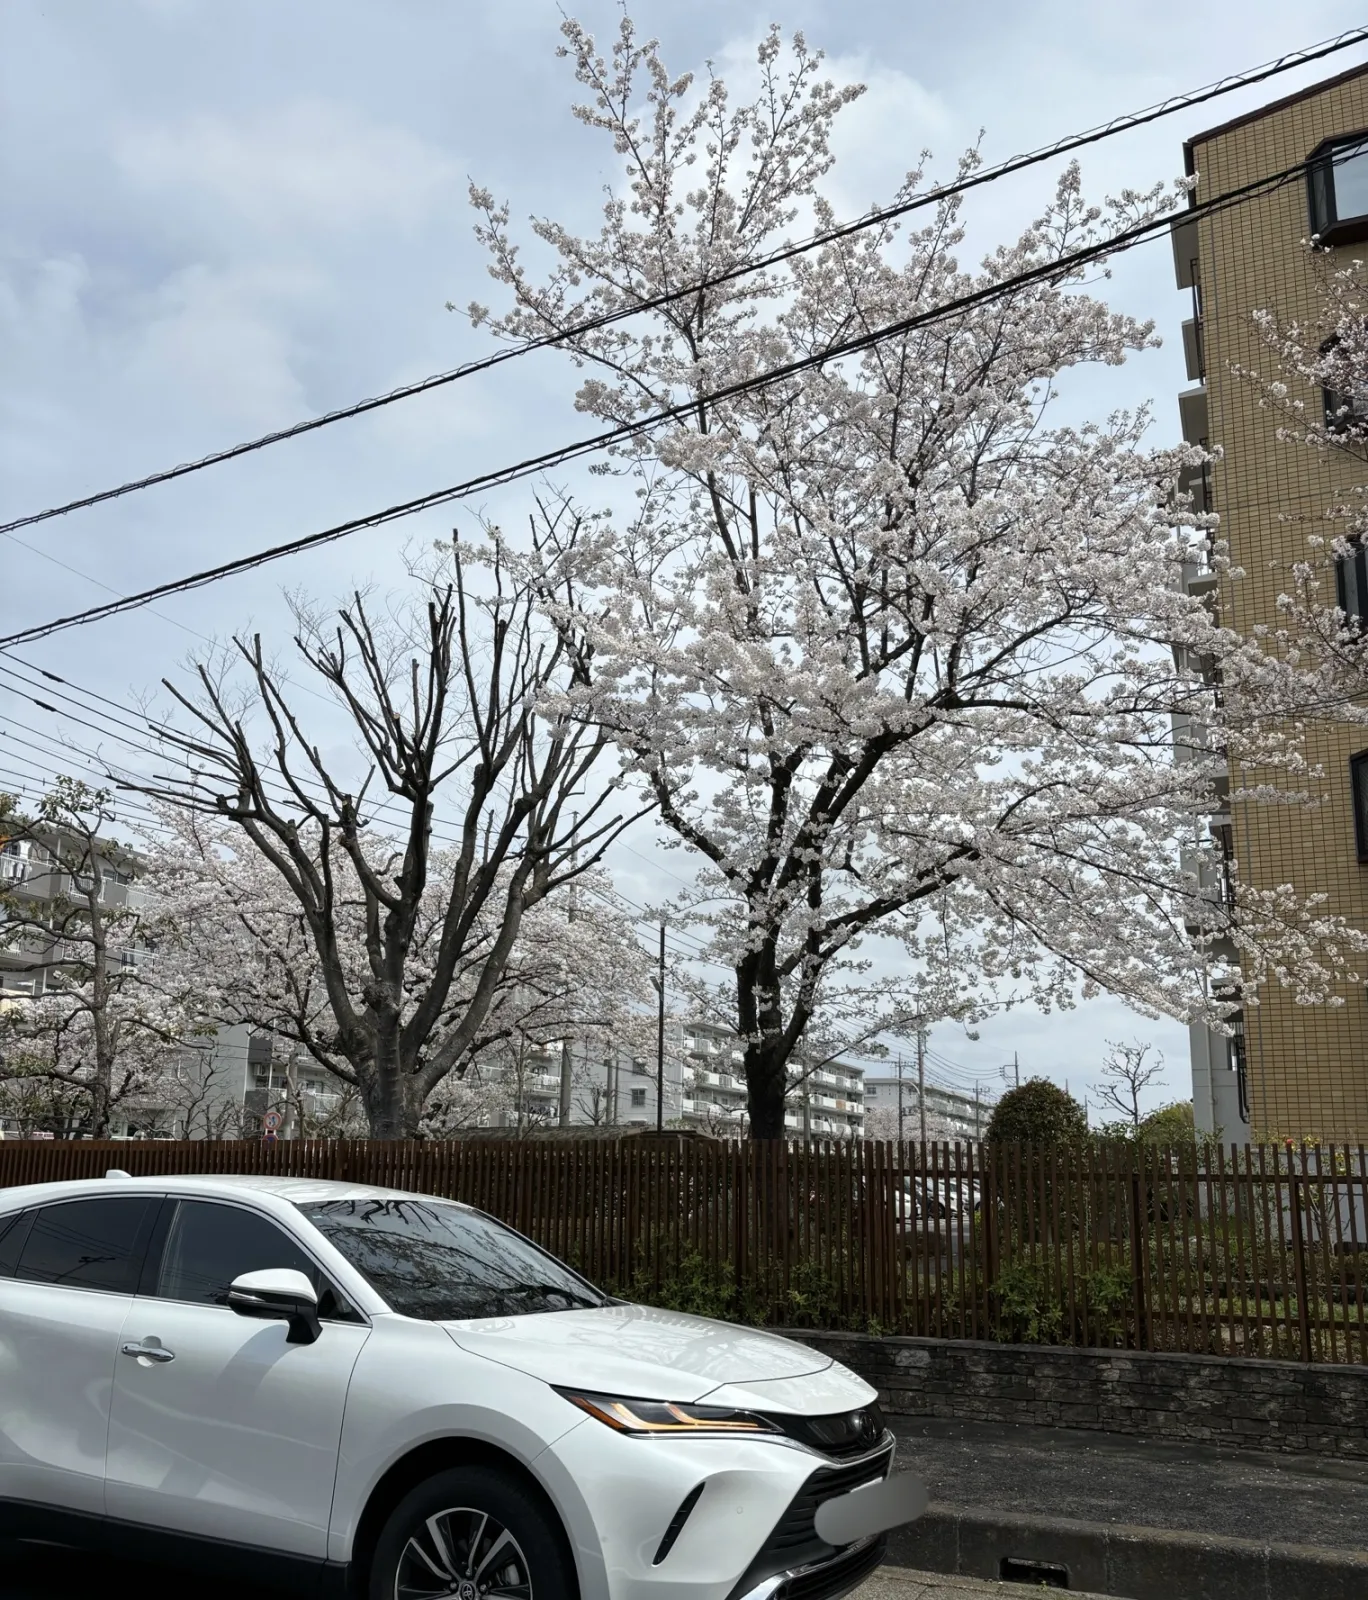 こんばんは〜

昨日、洗車からの桜で一枚。

そして3週間ぶりの洗車で色々ホッと一息☺️
キャンバスと2台洗いました👋